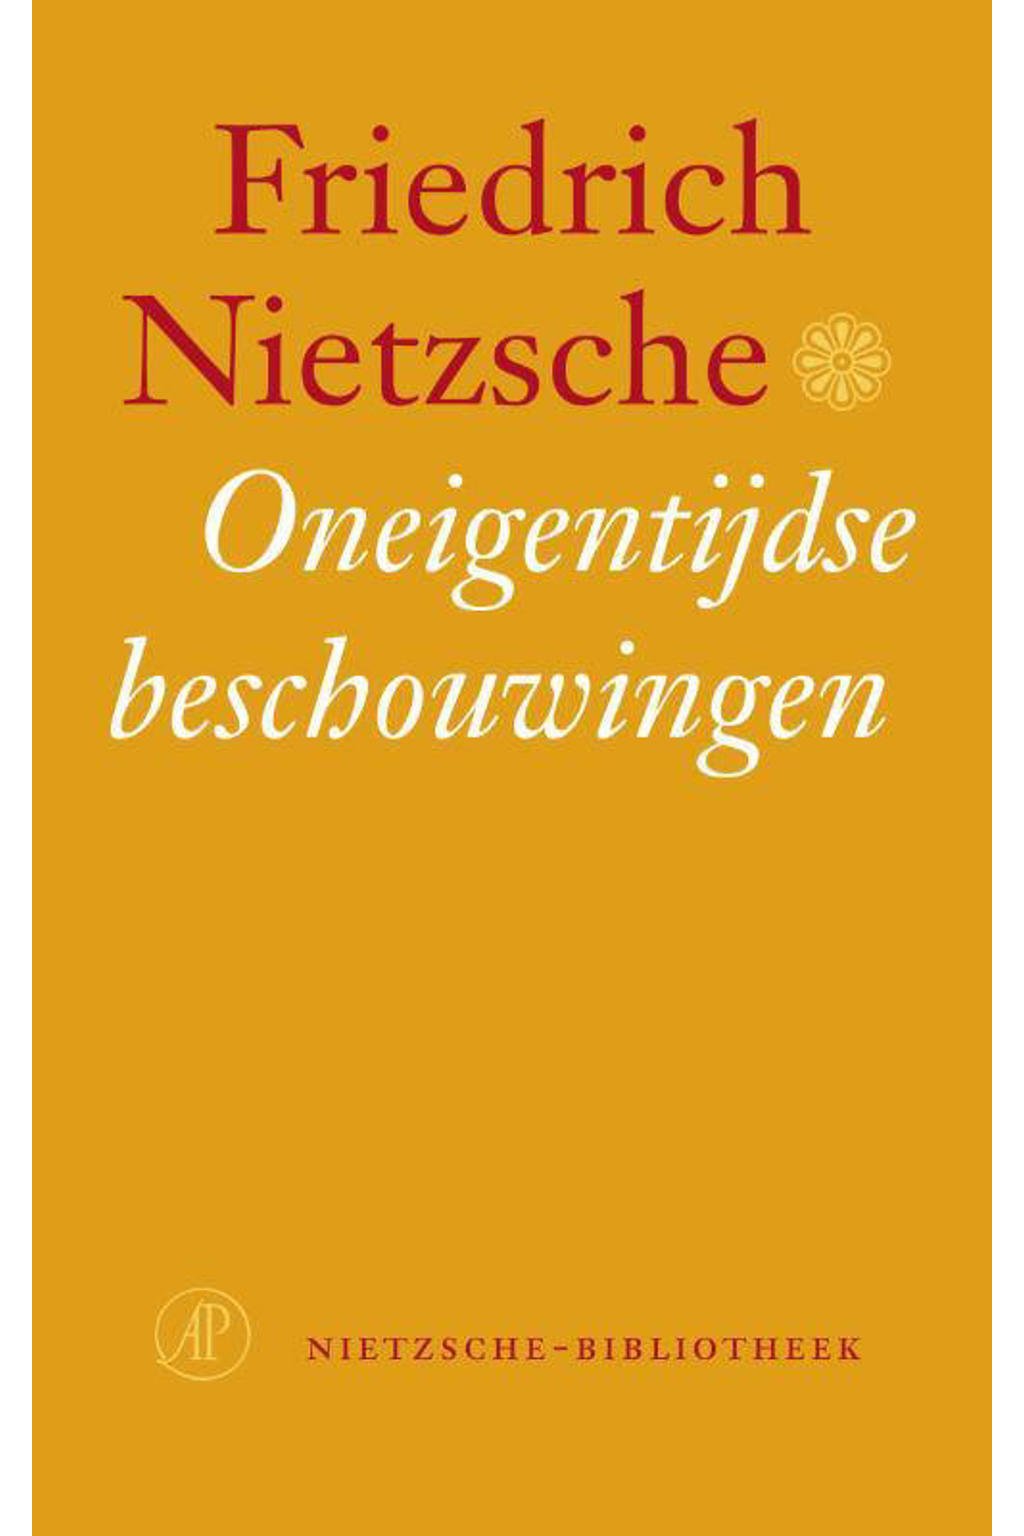 Nietzsche-bibliotheek: Oneigentijdse beschouwingen - Friedrich Nietzsche